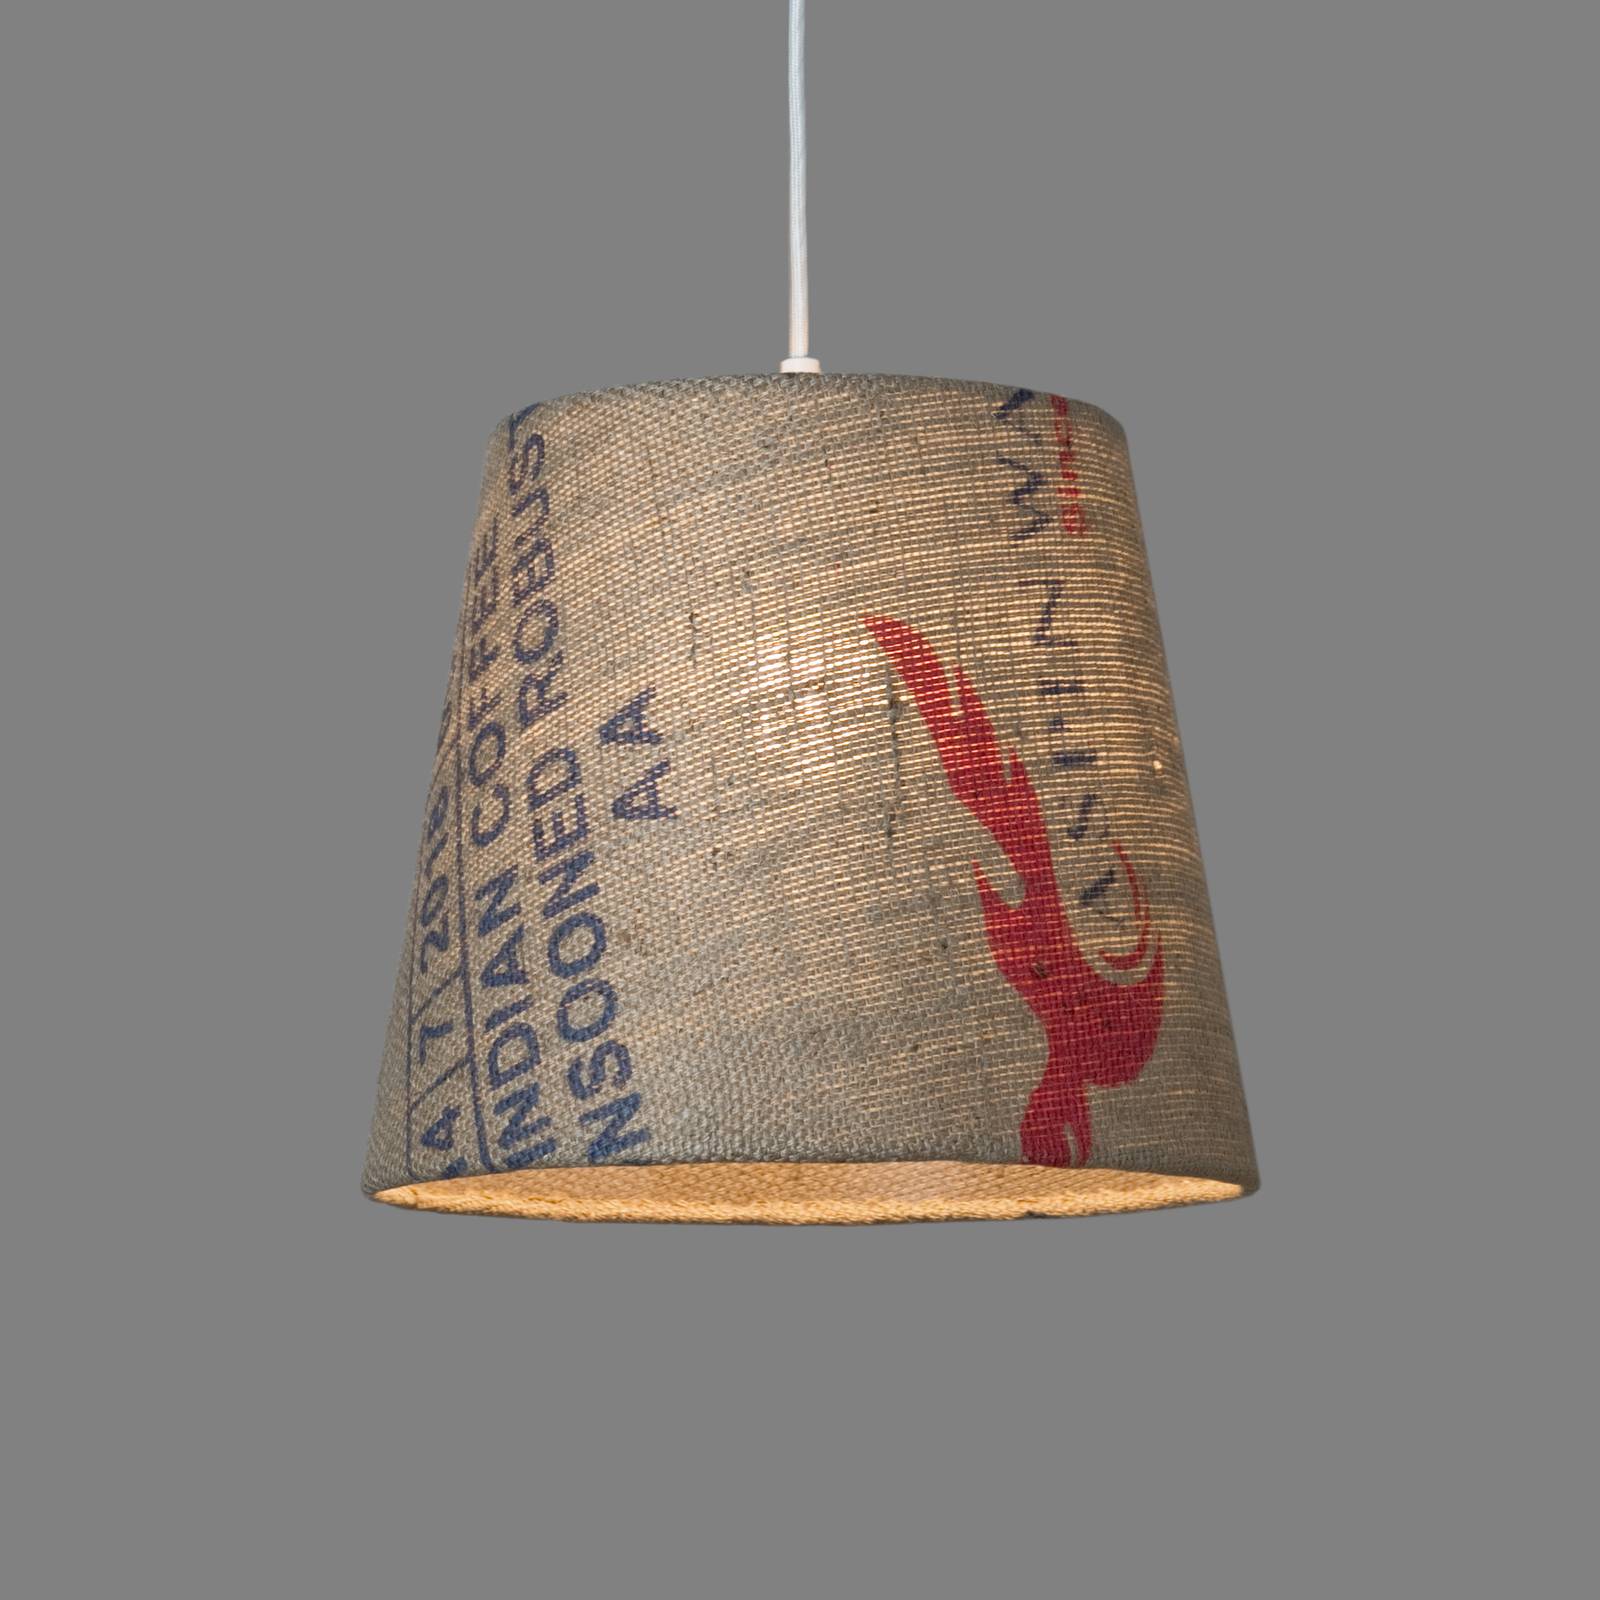 Hanglamp N°68 parelboon van jute-koffiezak